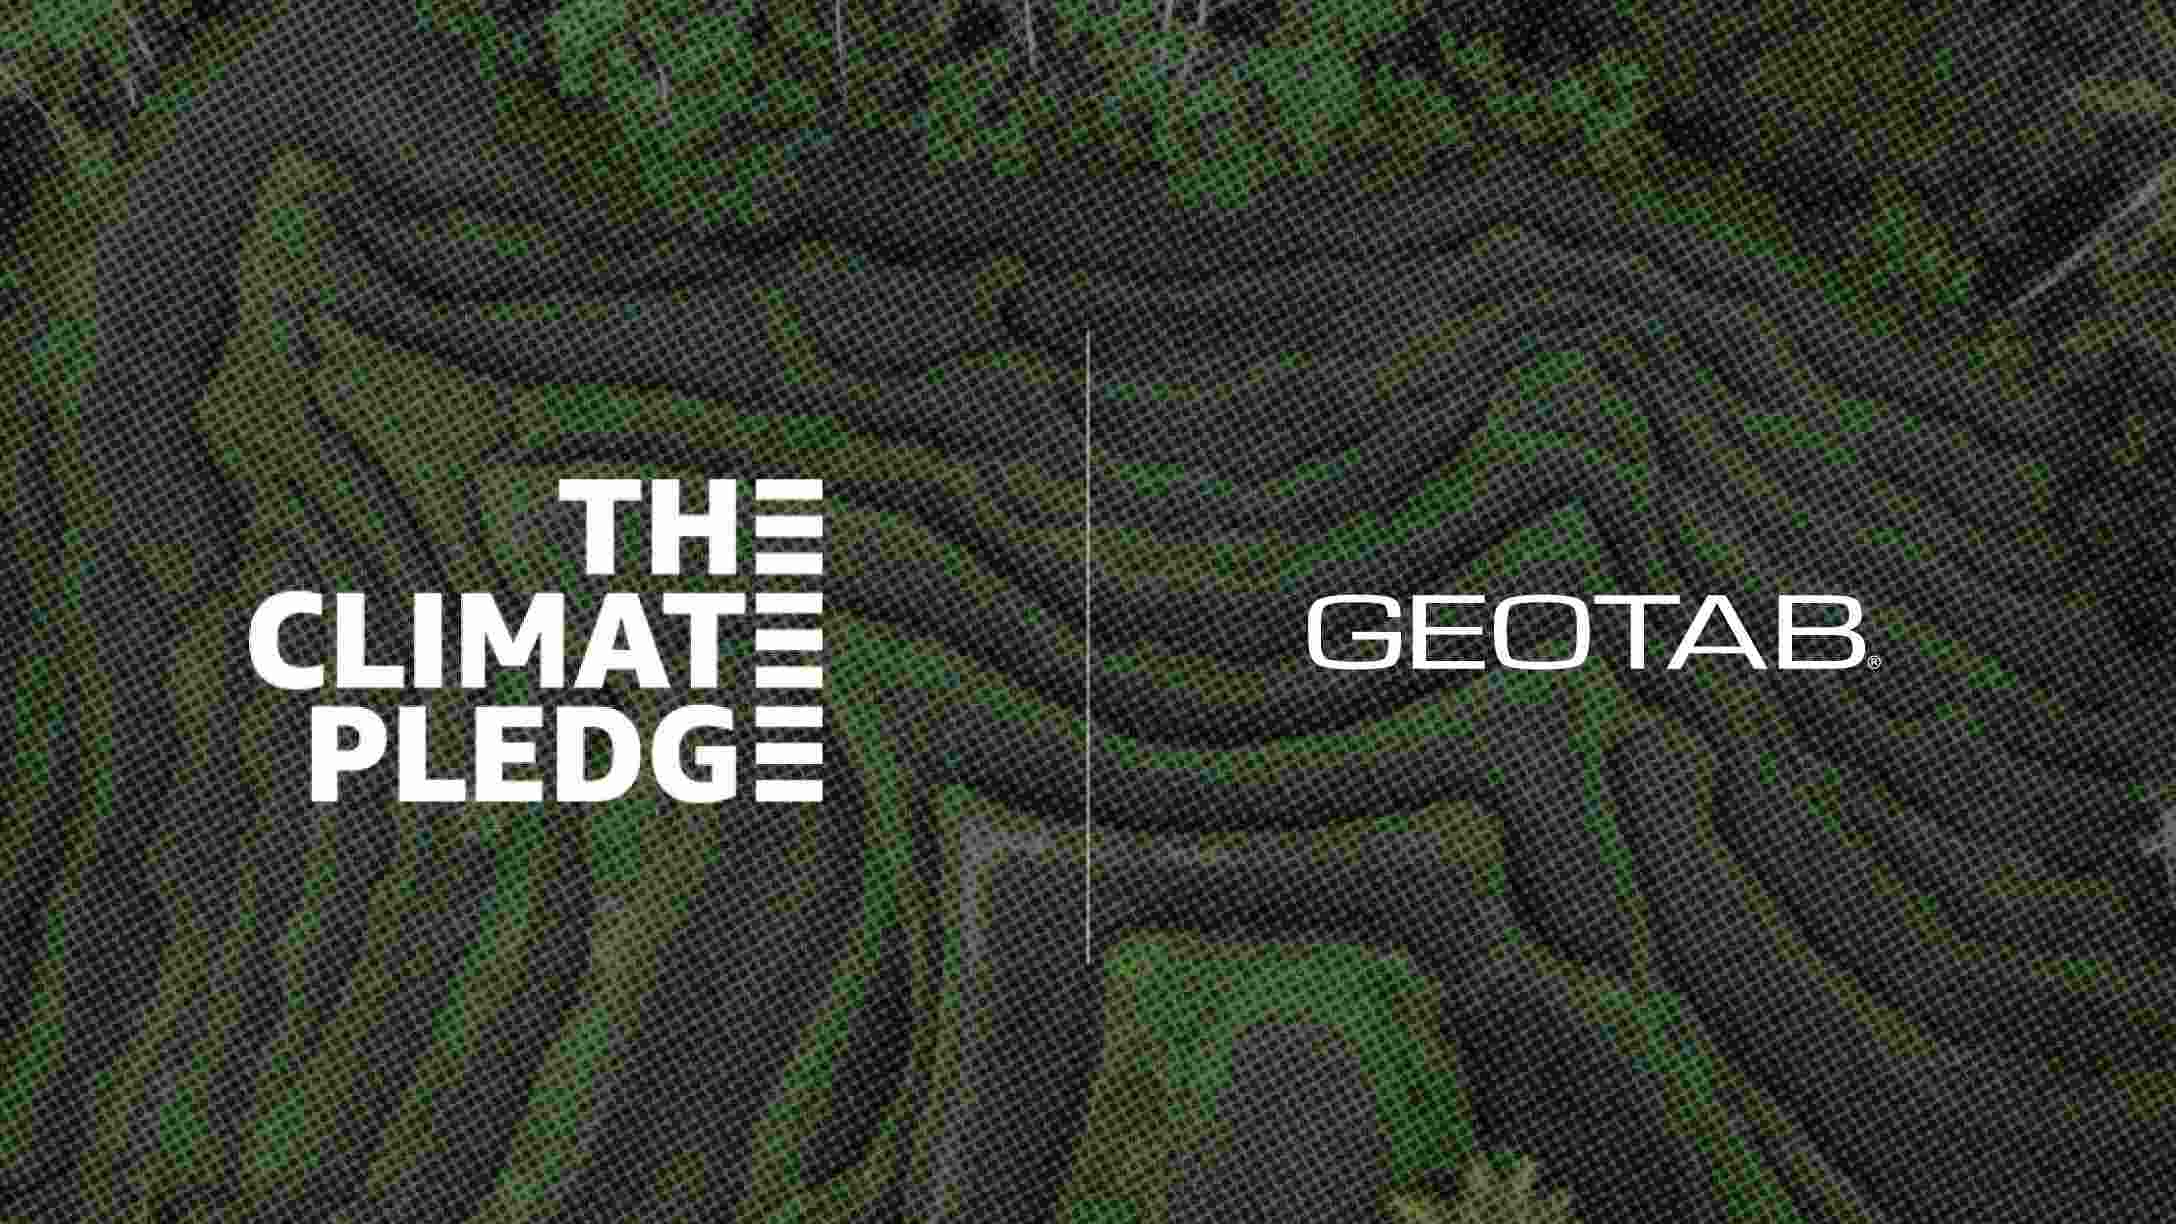 immagine del logo del Climate Pledge e della Geotab